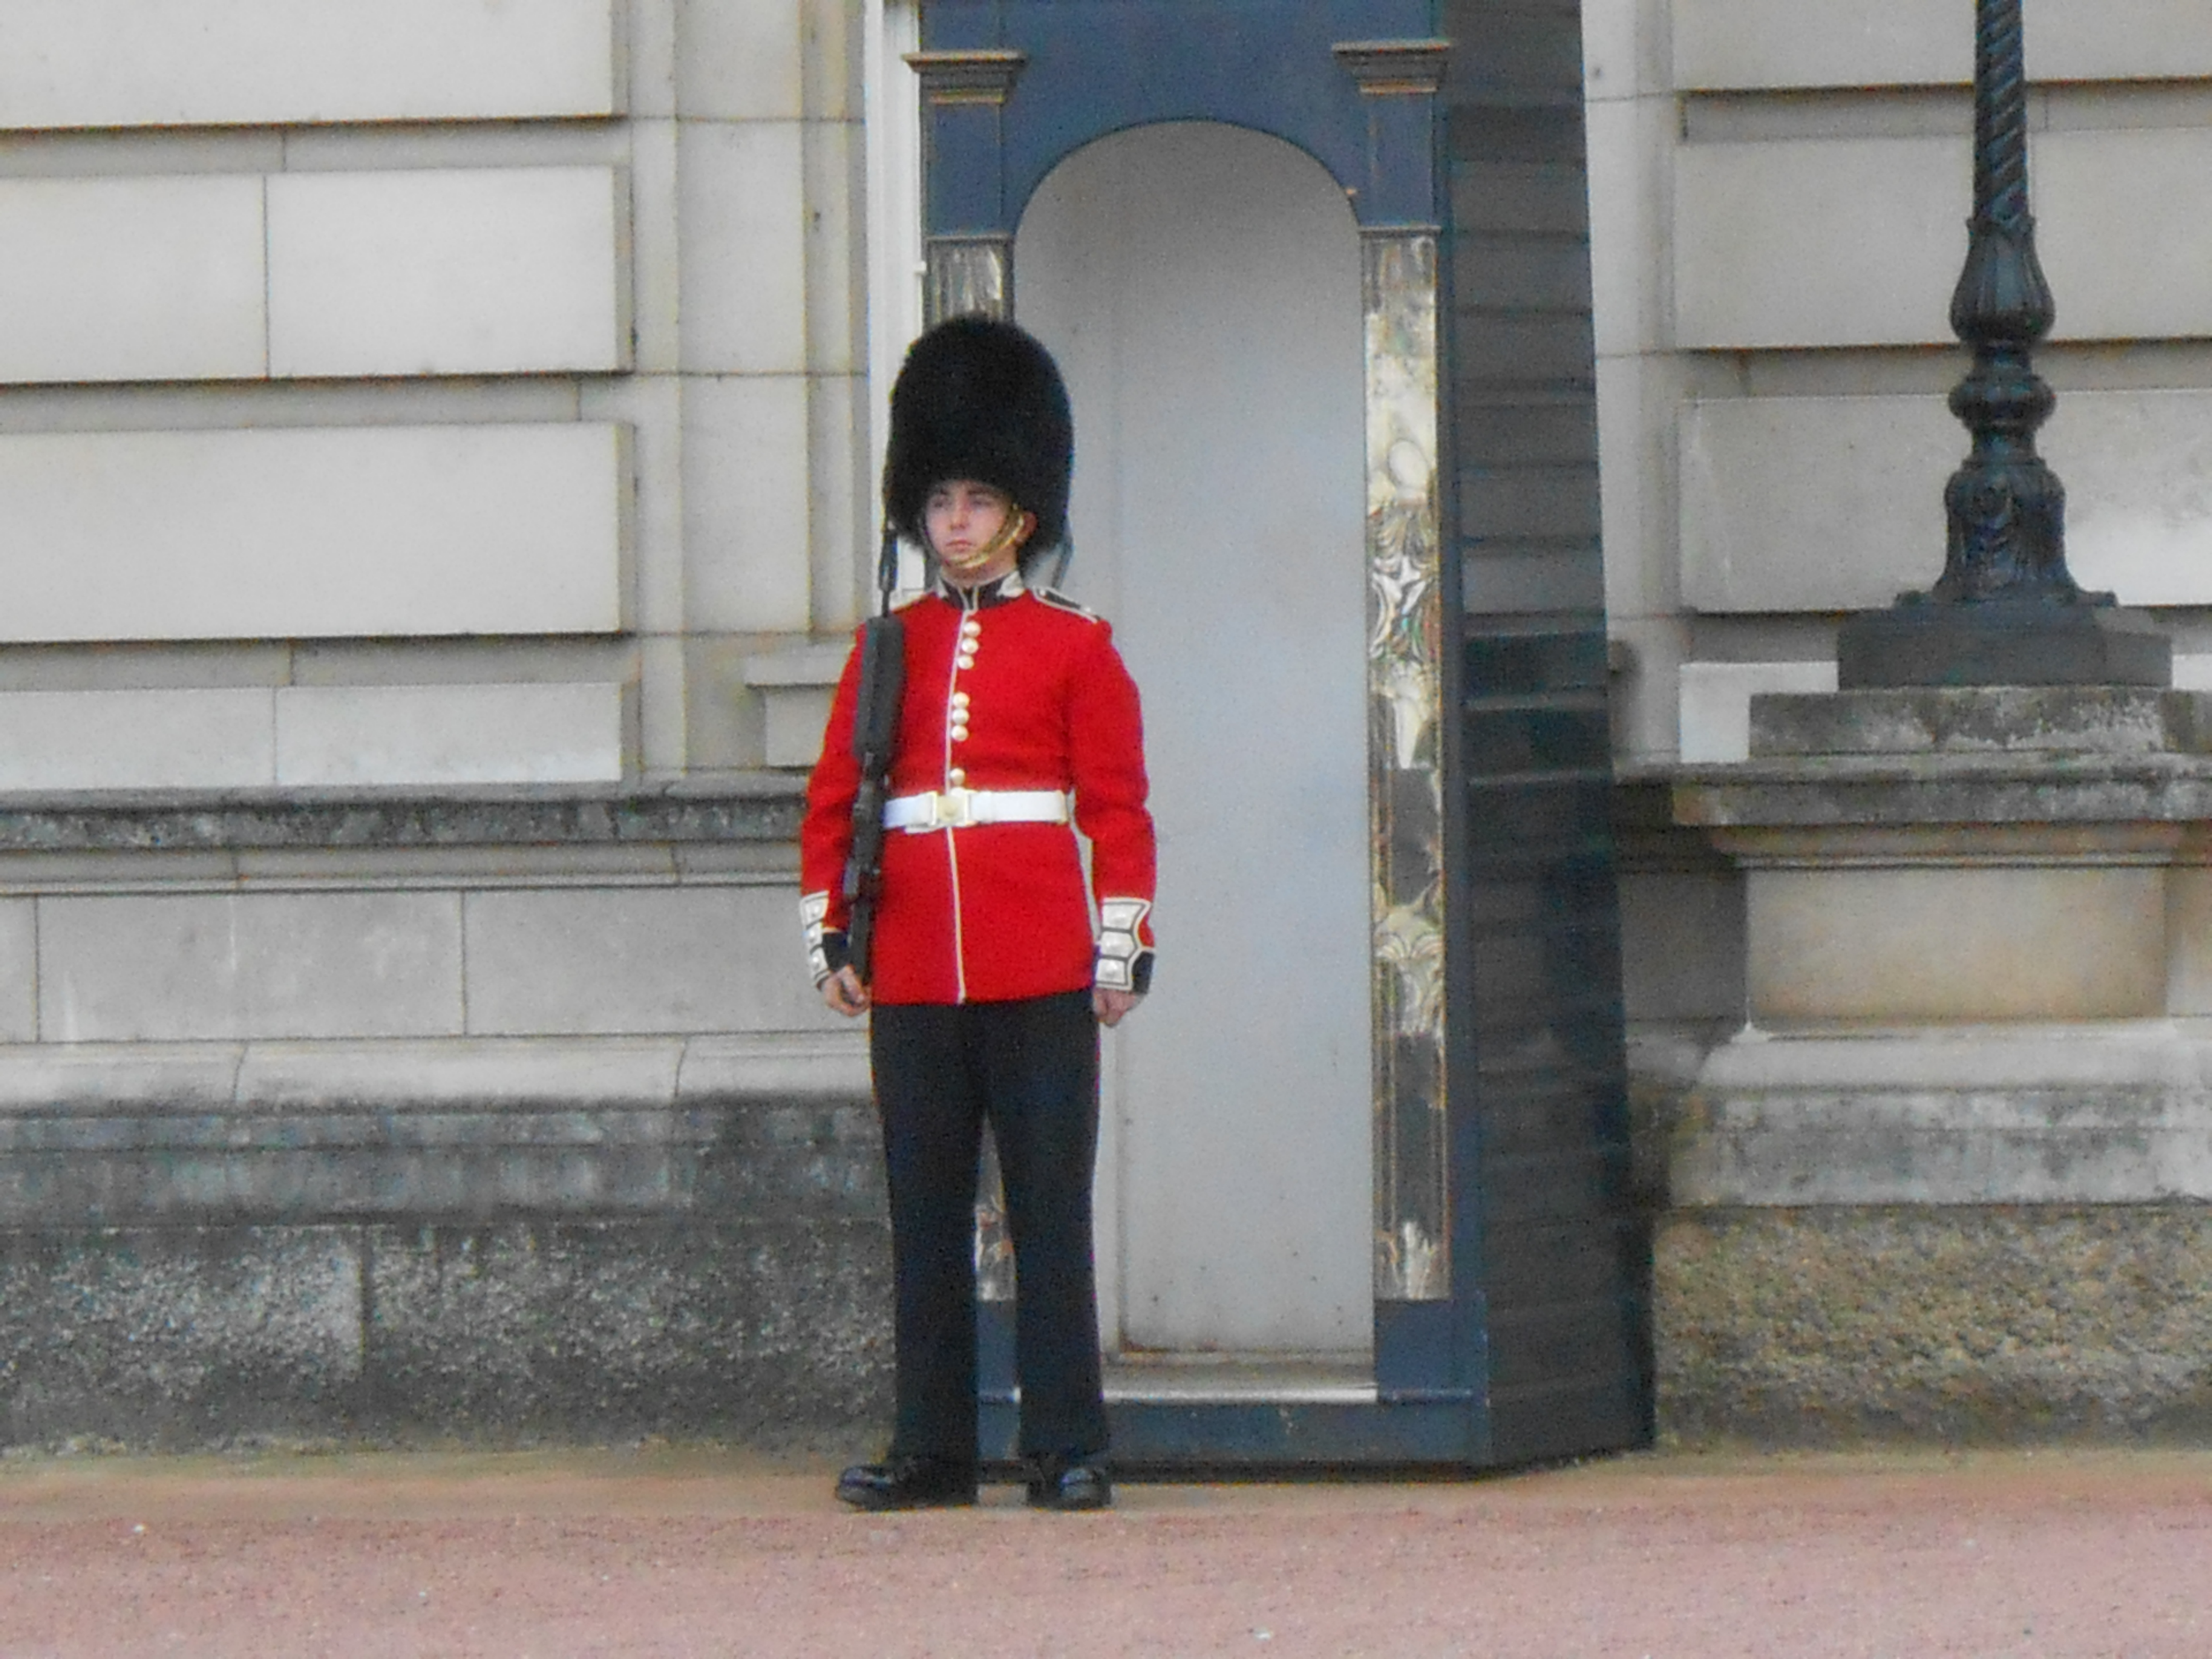 A guard at Buckingham Palace – tHiNk TwIcE